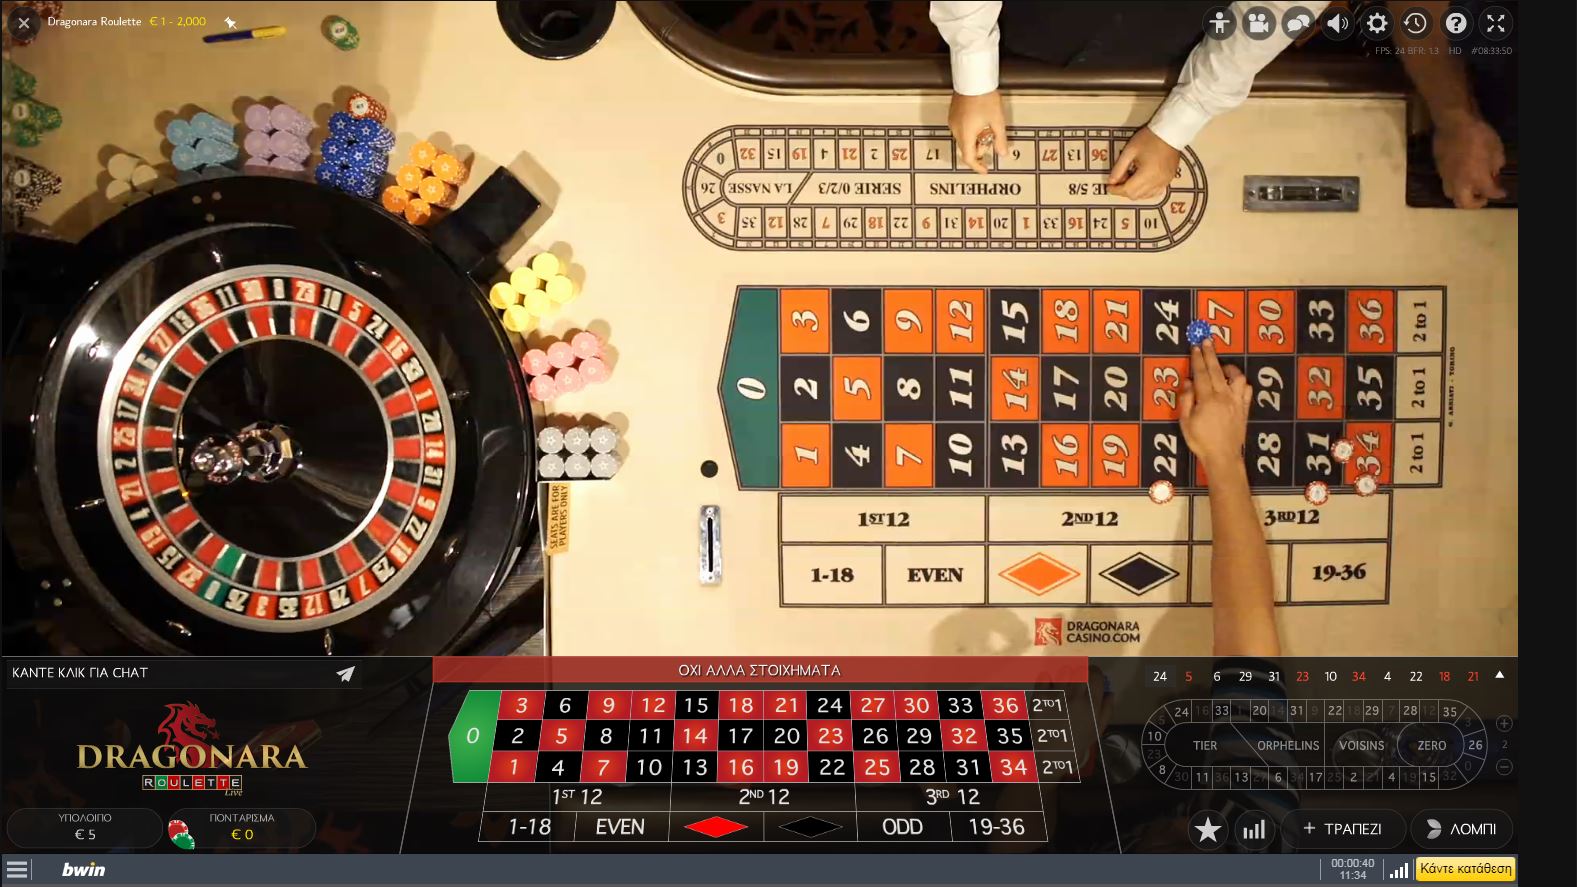 Bwin Online Casino Roulette